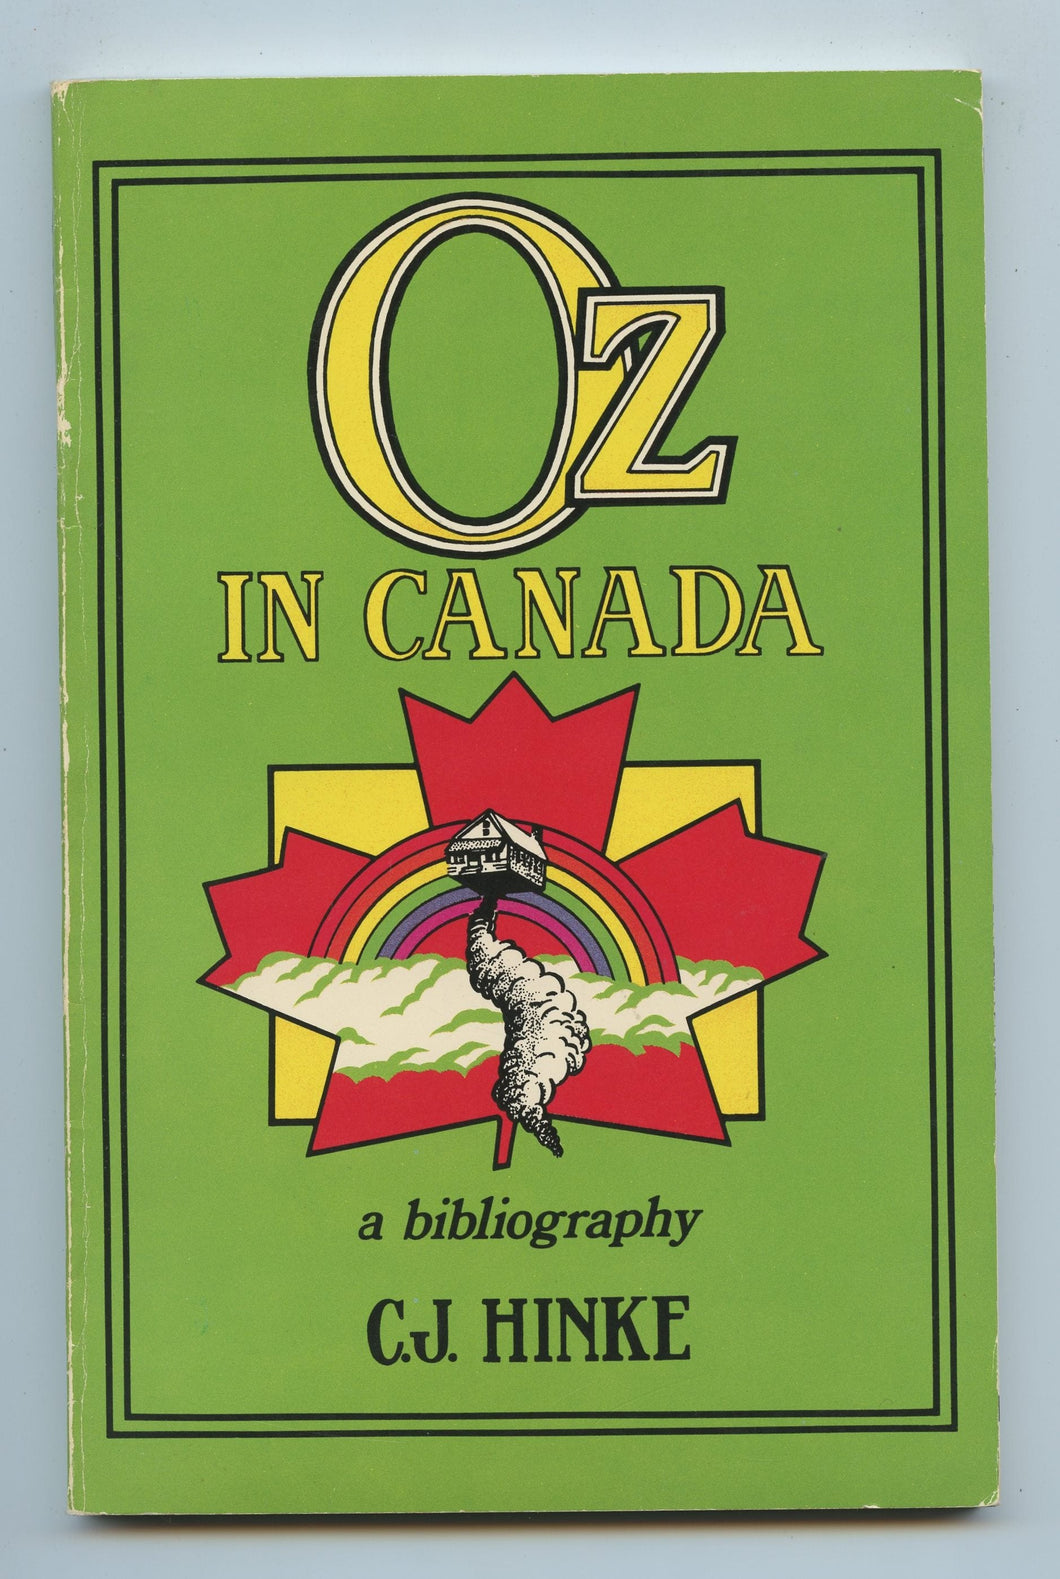 Oz in Canada: a bibliography